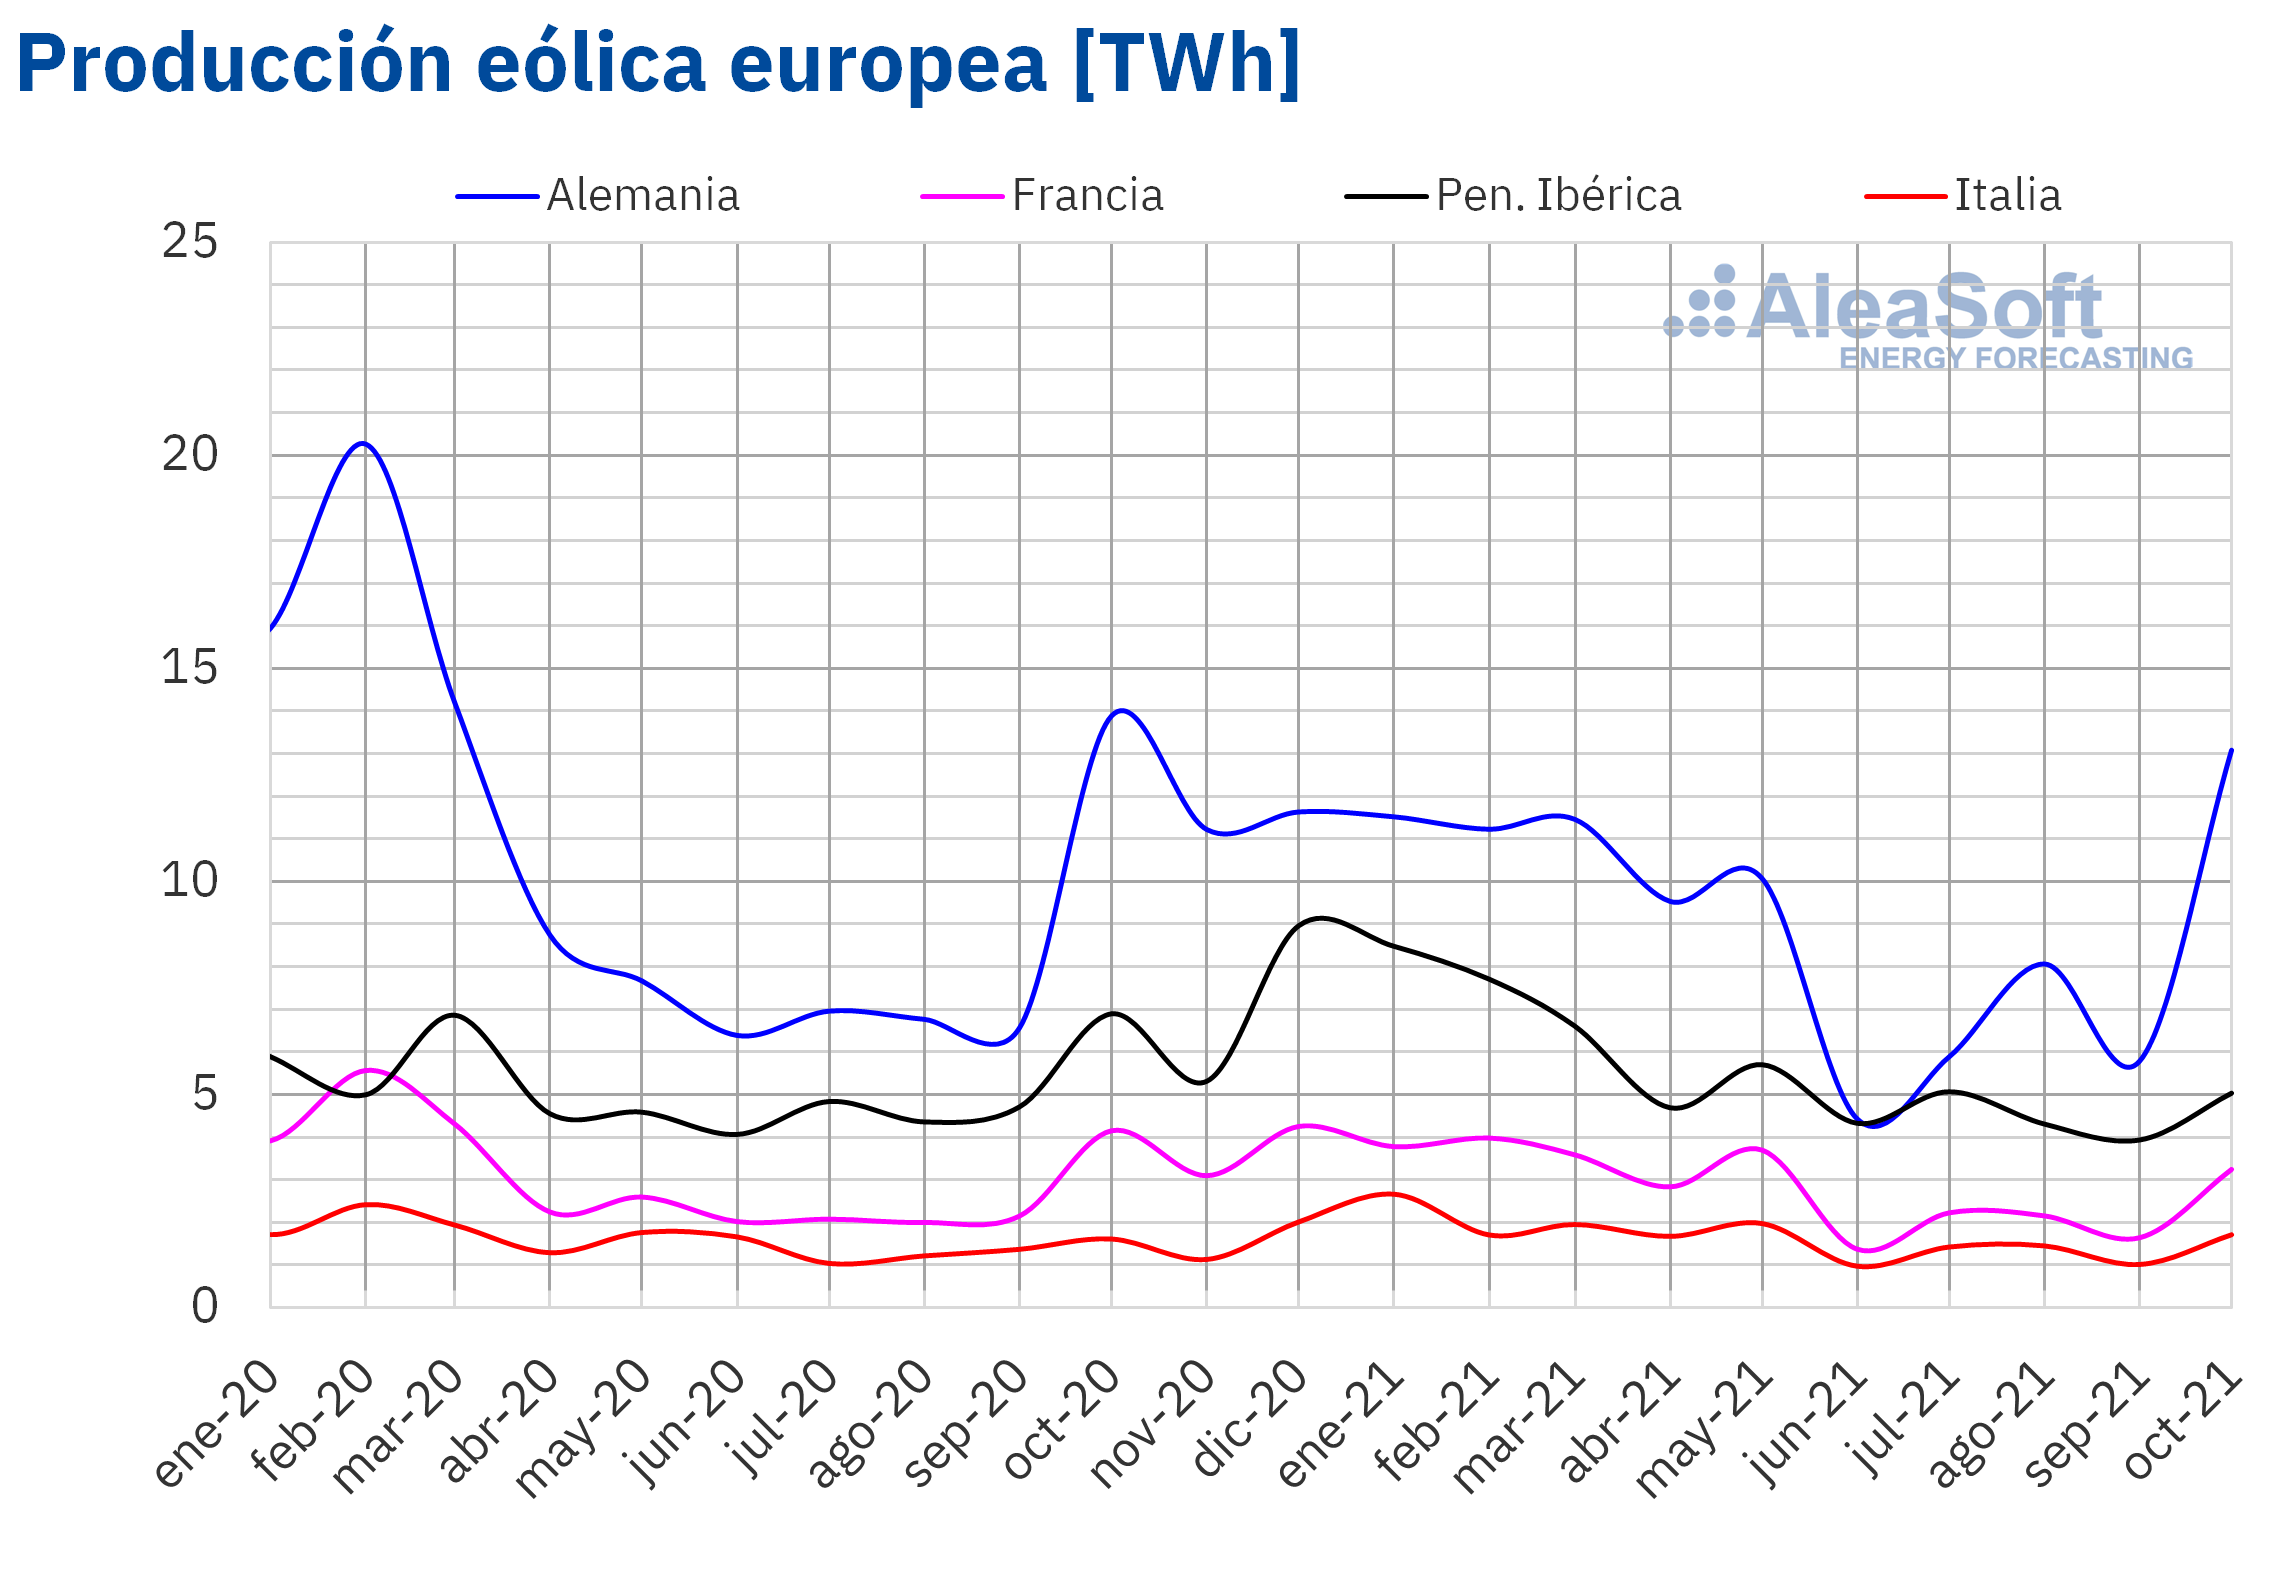 AleaSoft - Produccion mensual eolica electricidad Europa